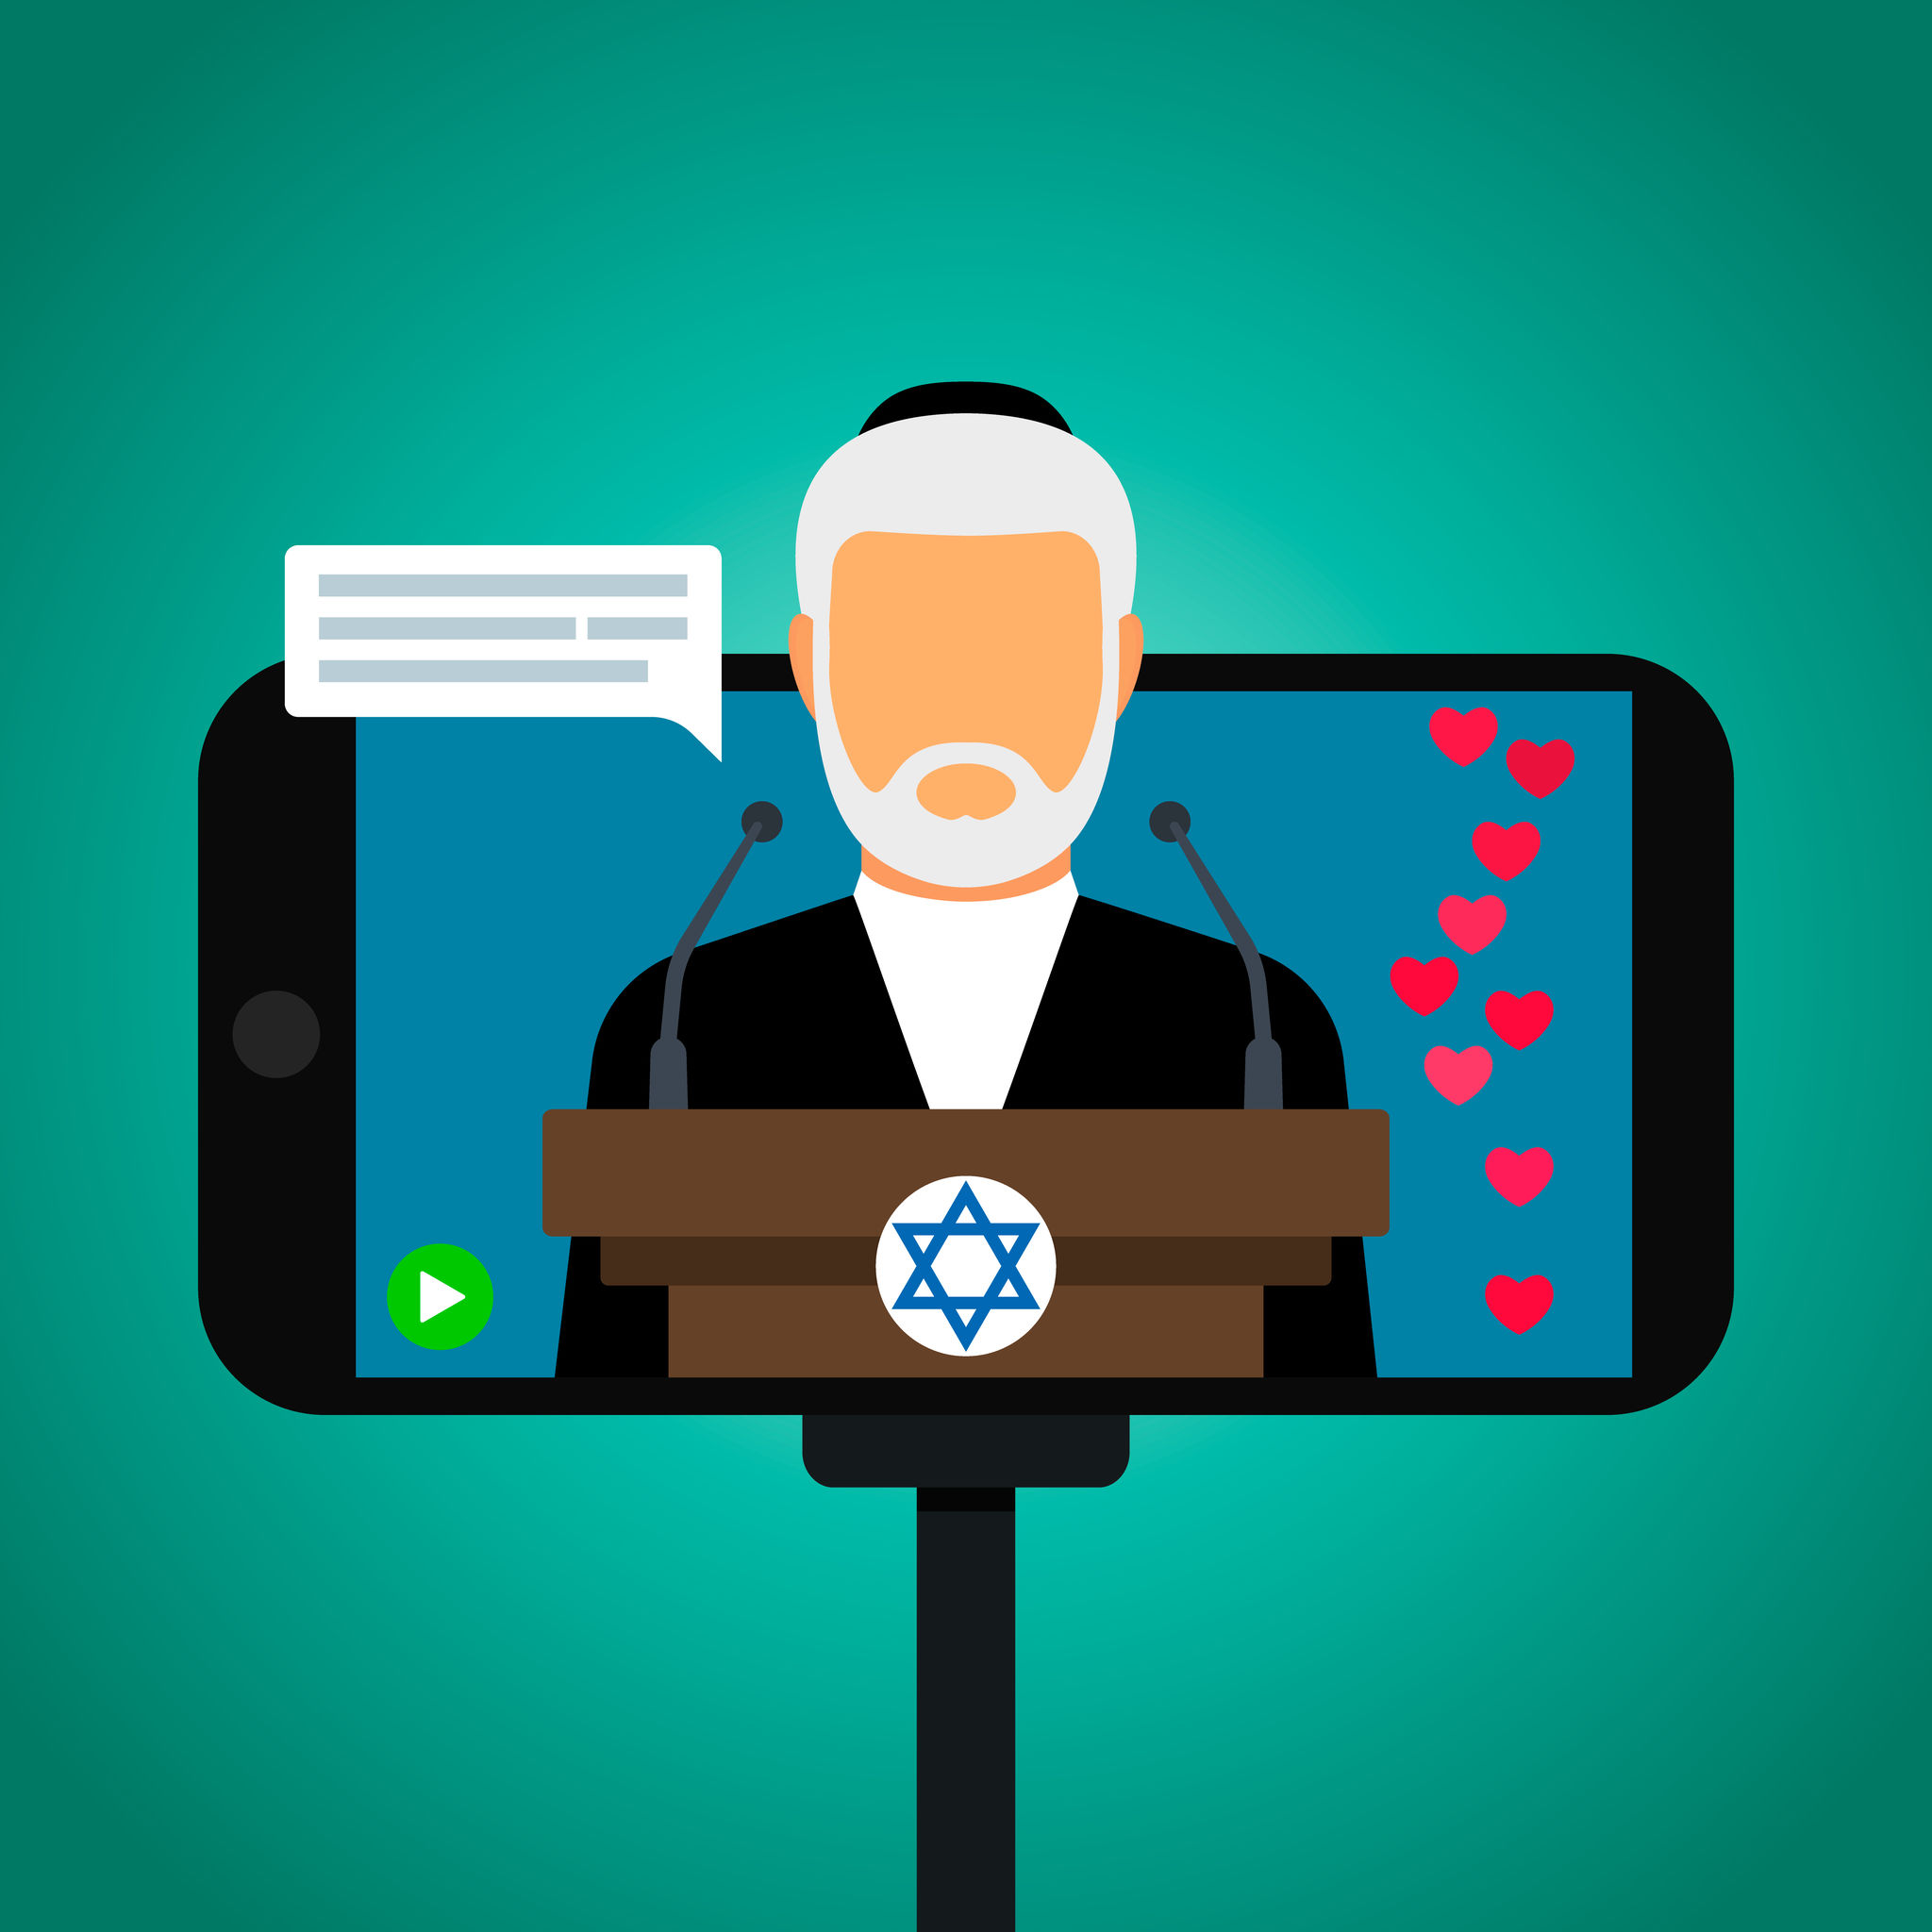 Rabbi Service on Smartphone